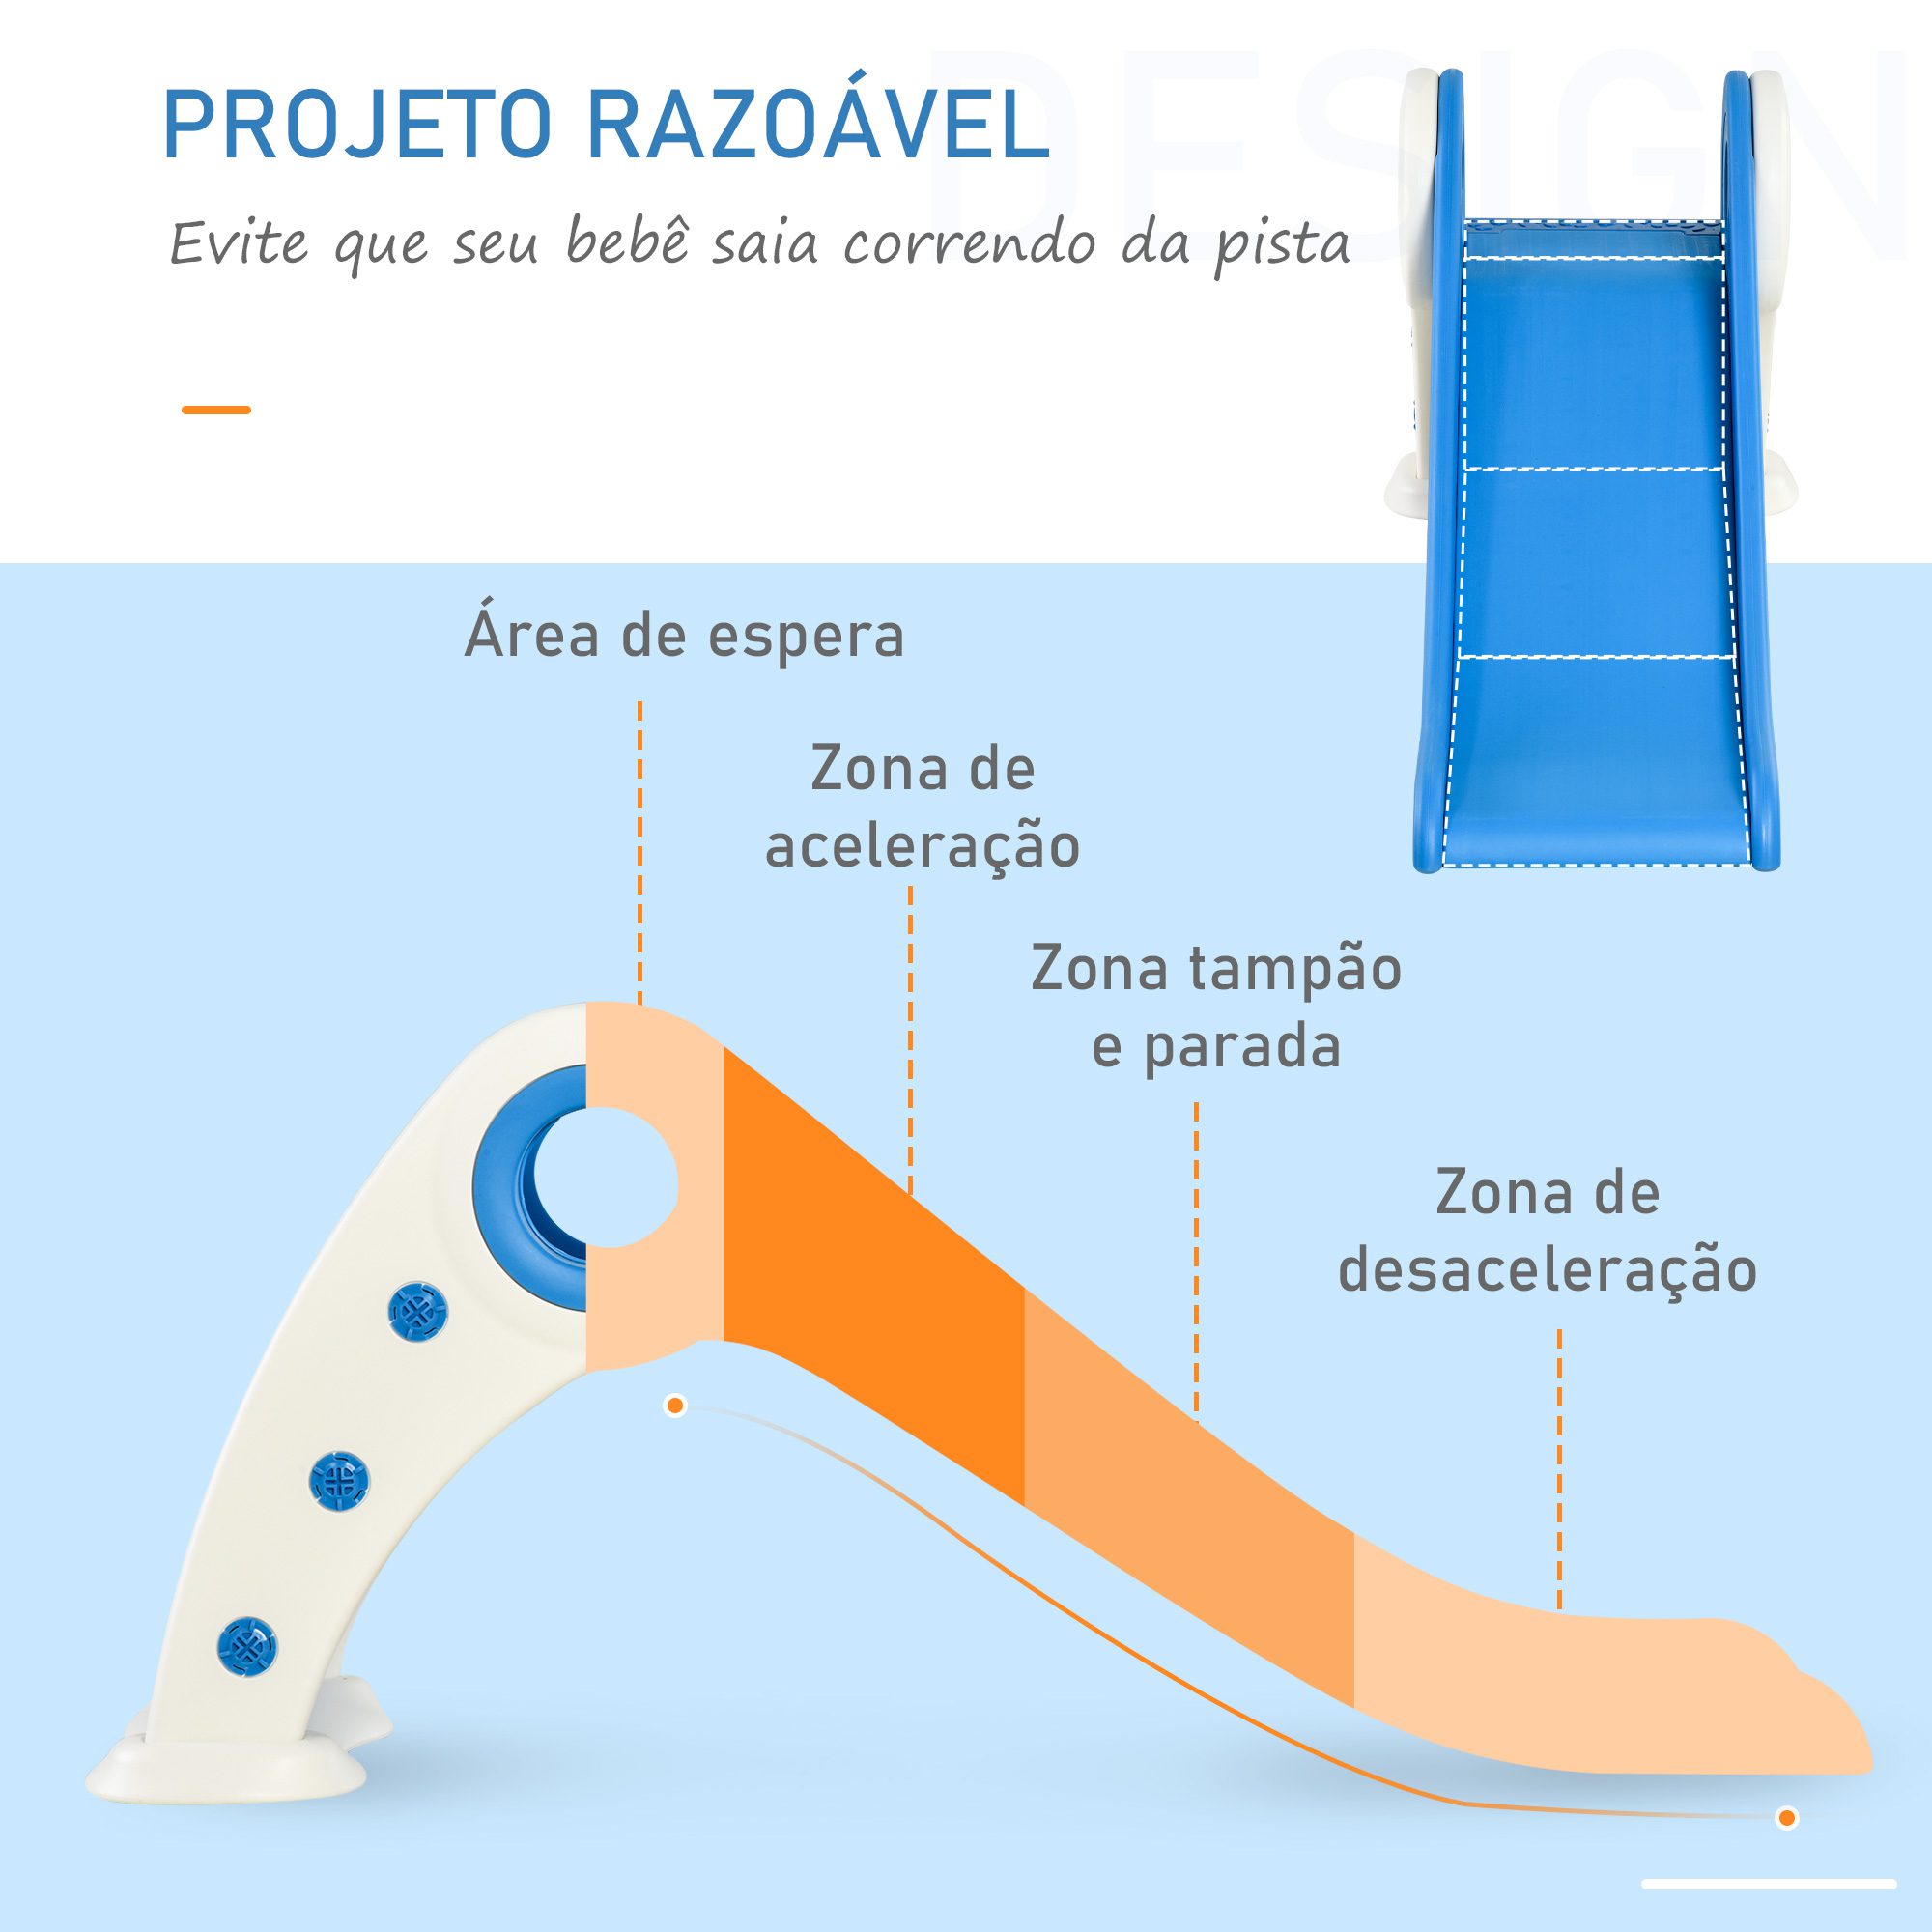 Escorrega infantil para crianças acima de 3 anos dobrável com escada e  rampa 120x50x56 cm Azul